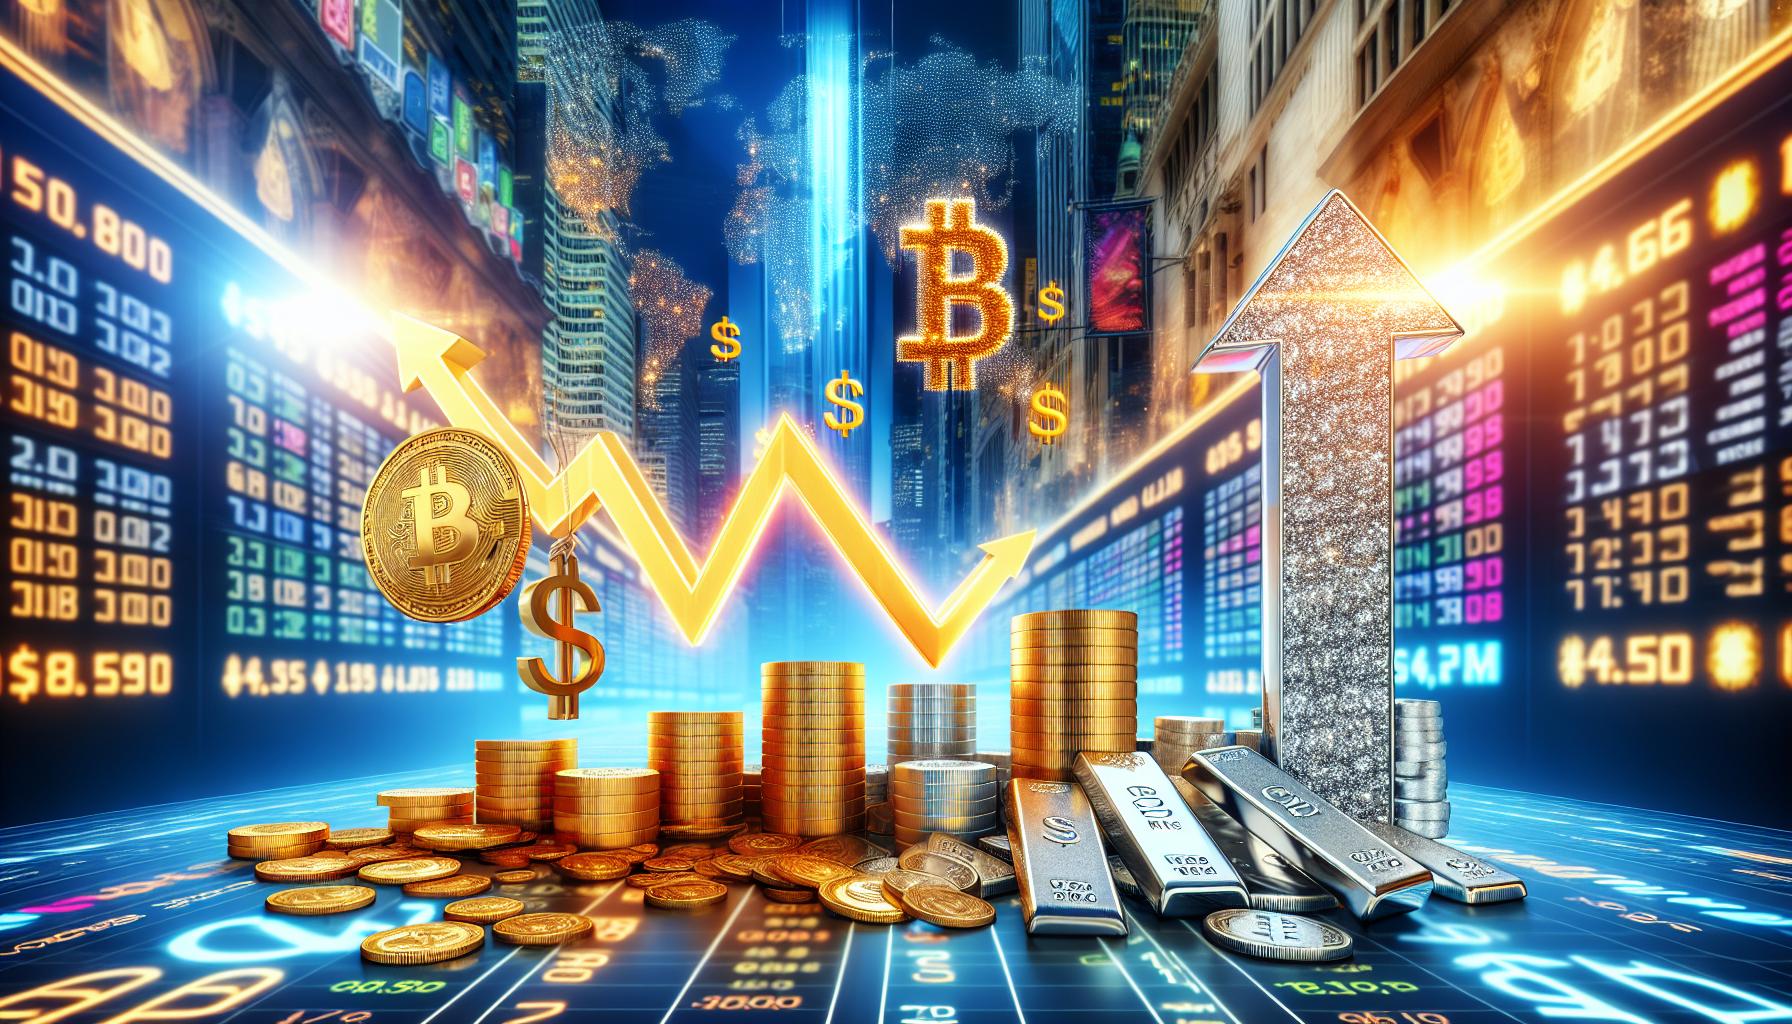 Robert Kiyosaki Predicts Bitcoin and Silver Surge | FinOracle